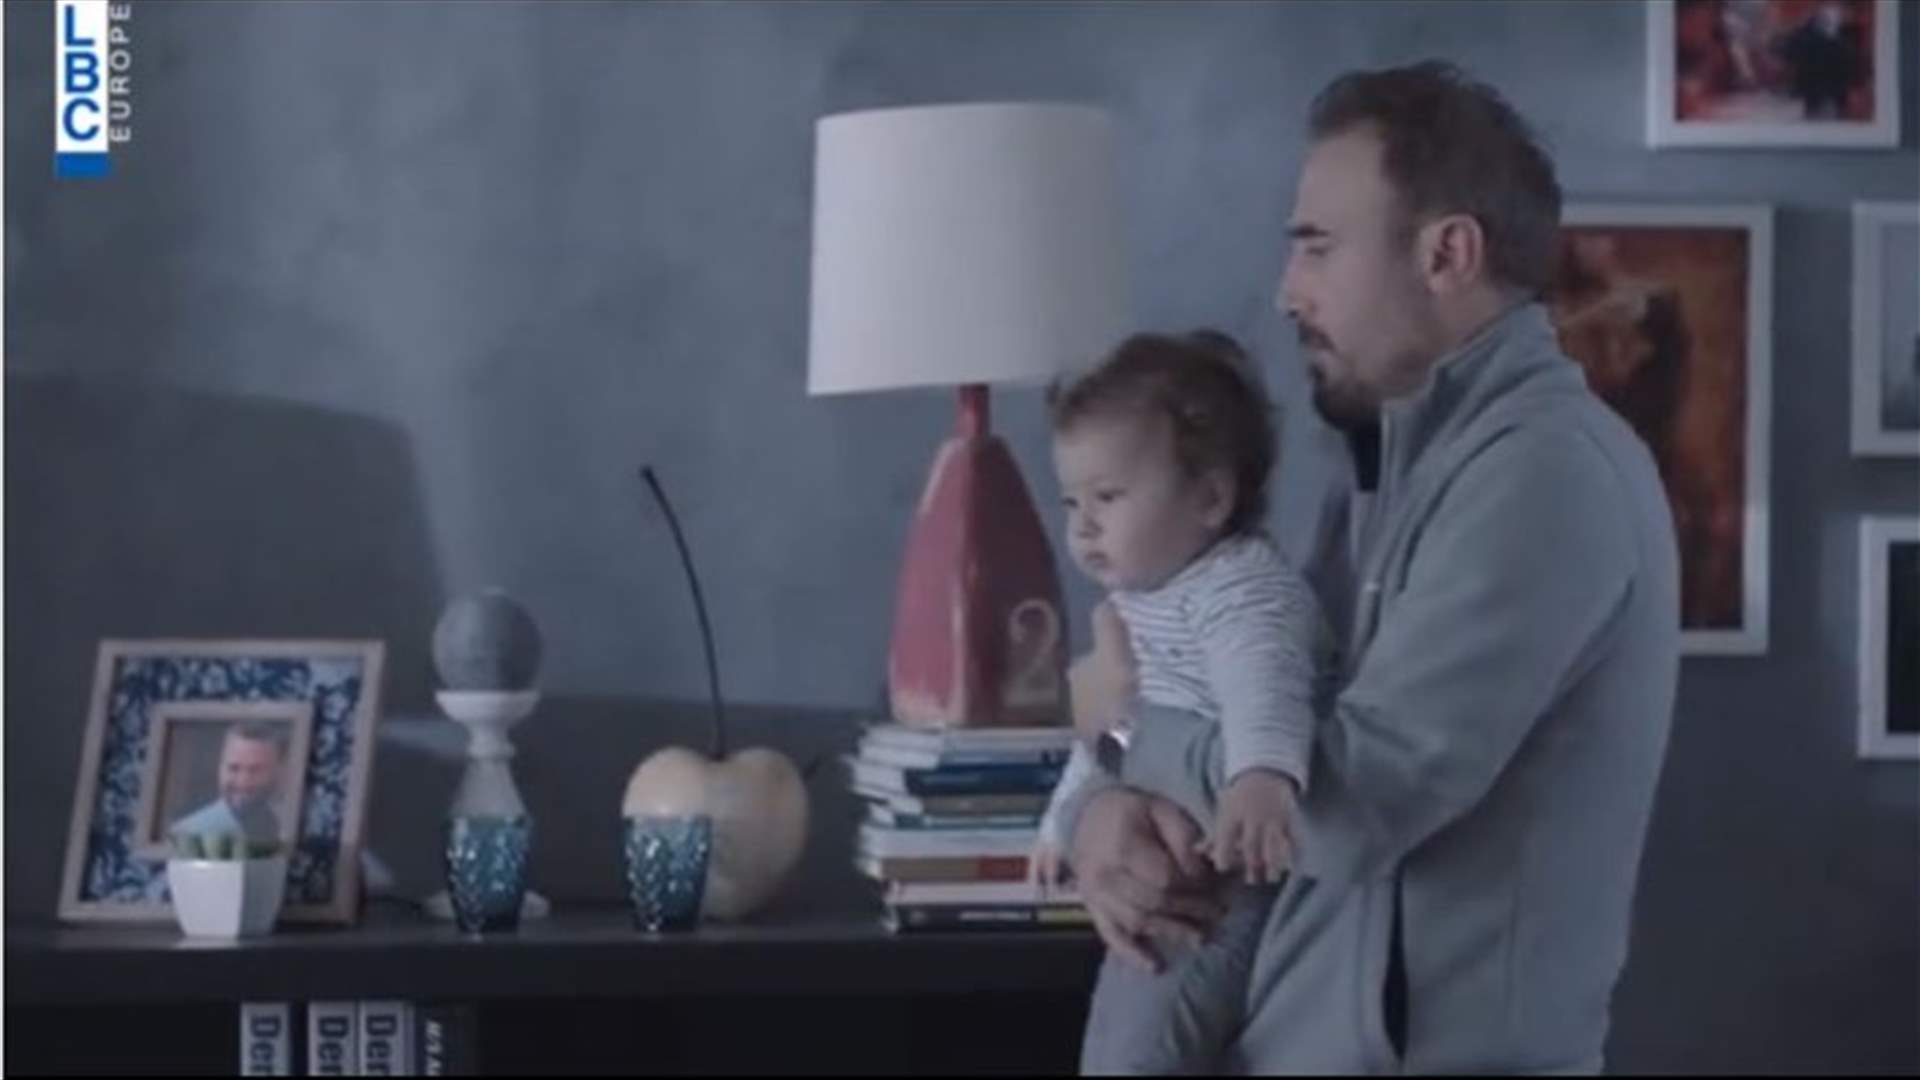 بالفيديو- باسم مغنية يعيش حالة صراع... هل هو الأب الحقيقي لابنه؟